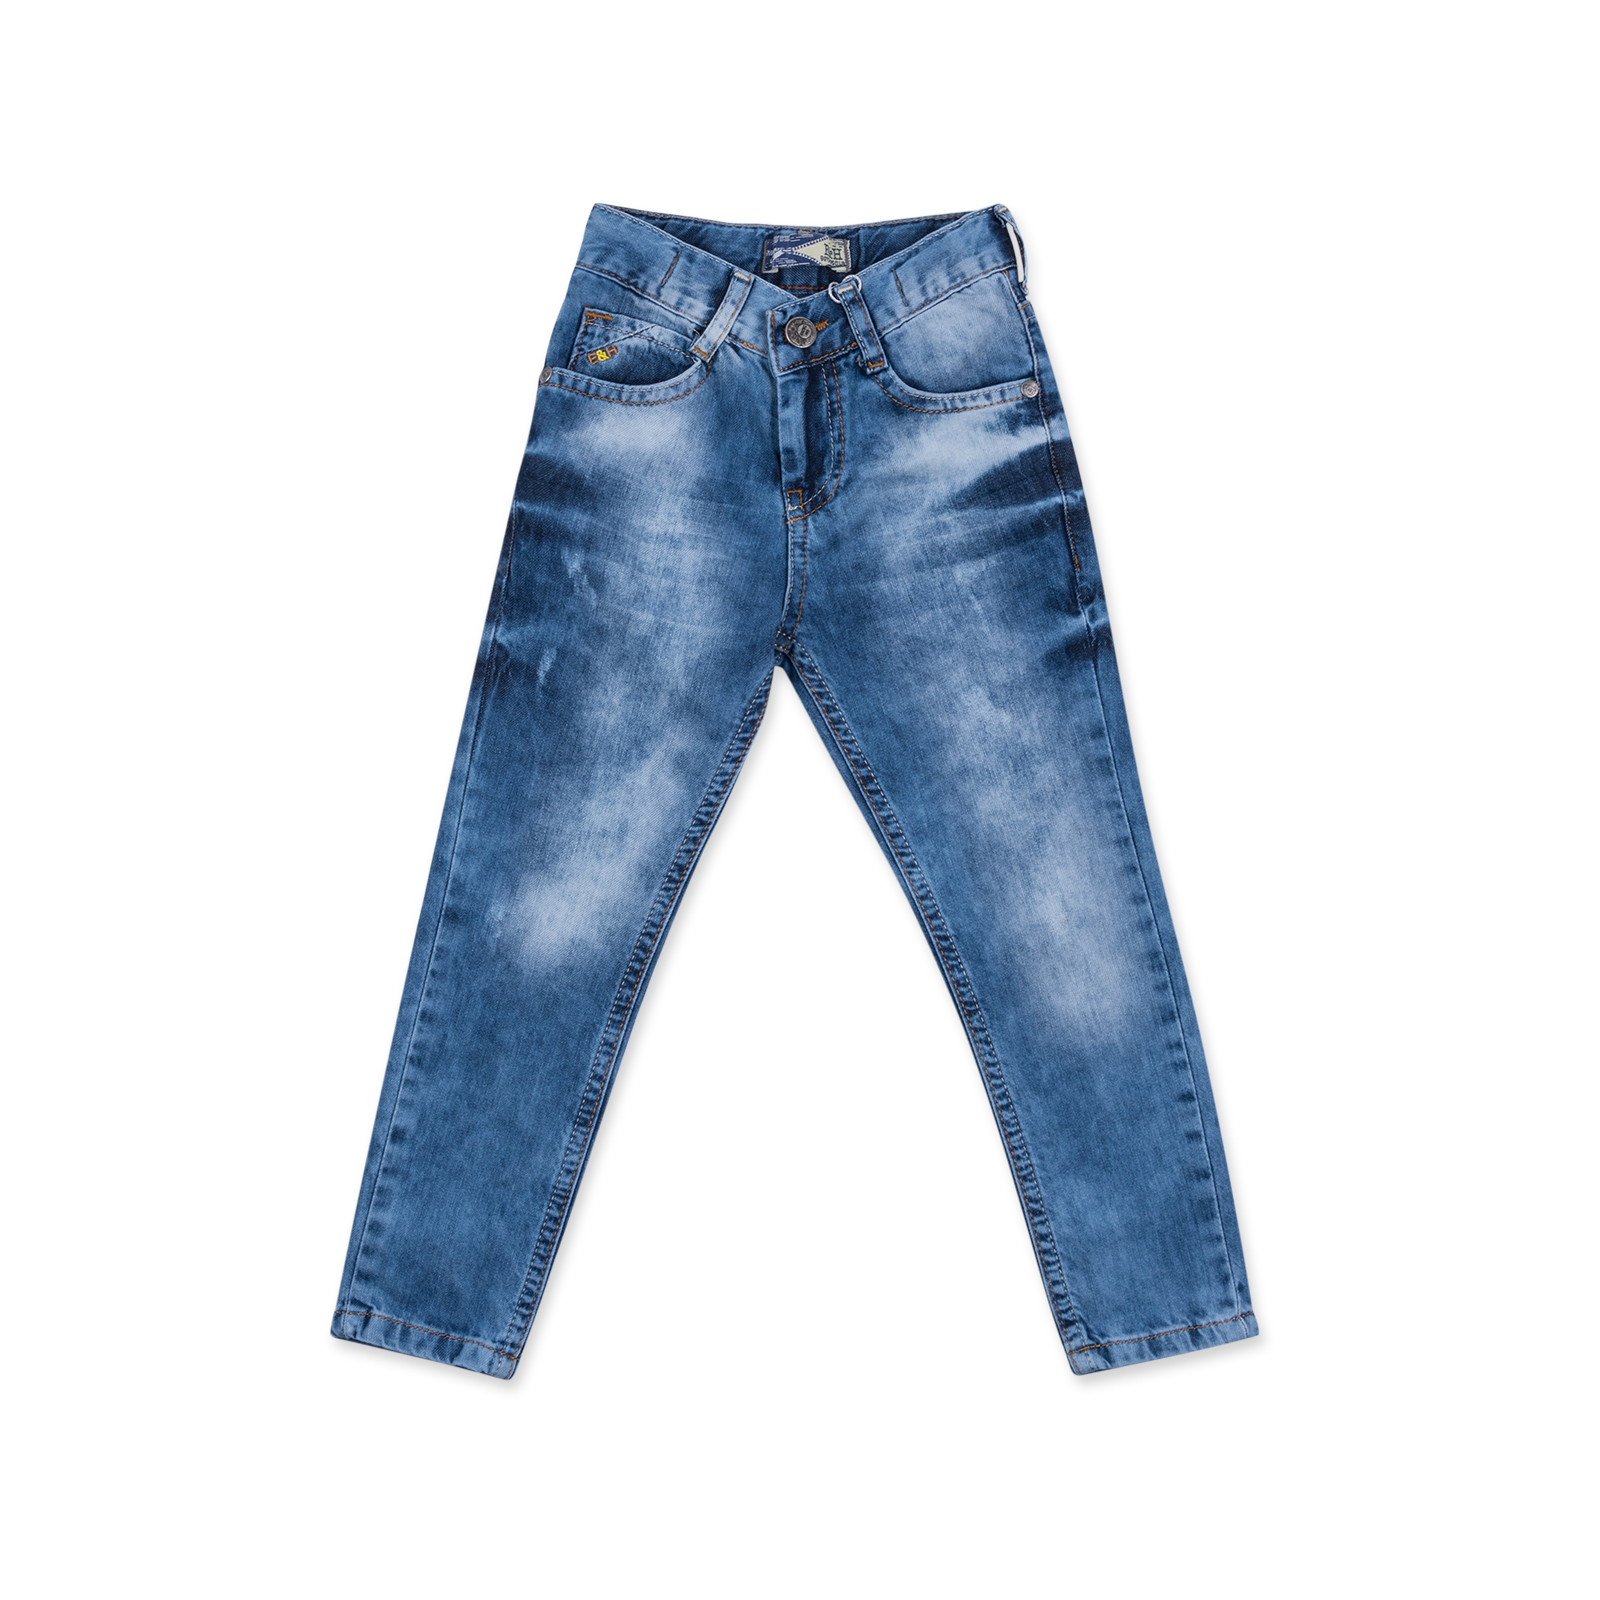 Джинси Breeze с потертостями (20072-98B-jeans)